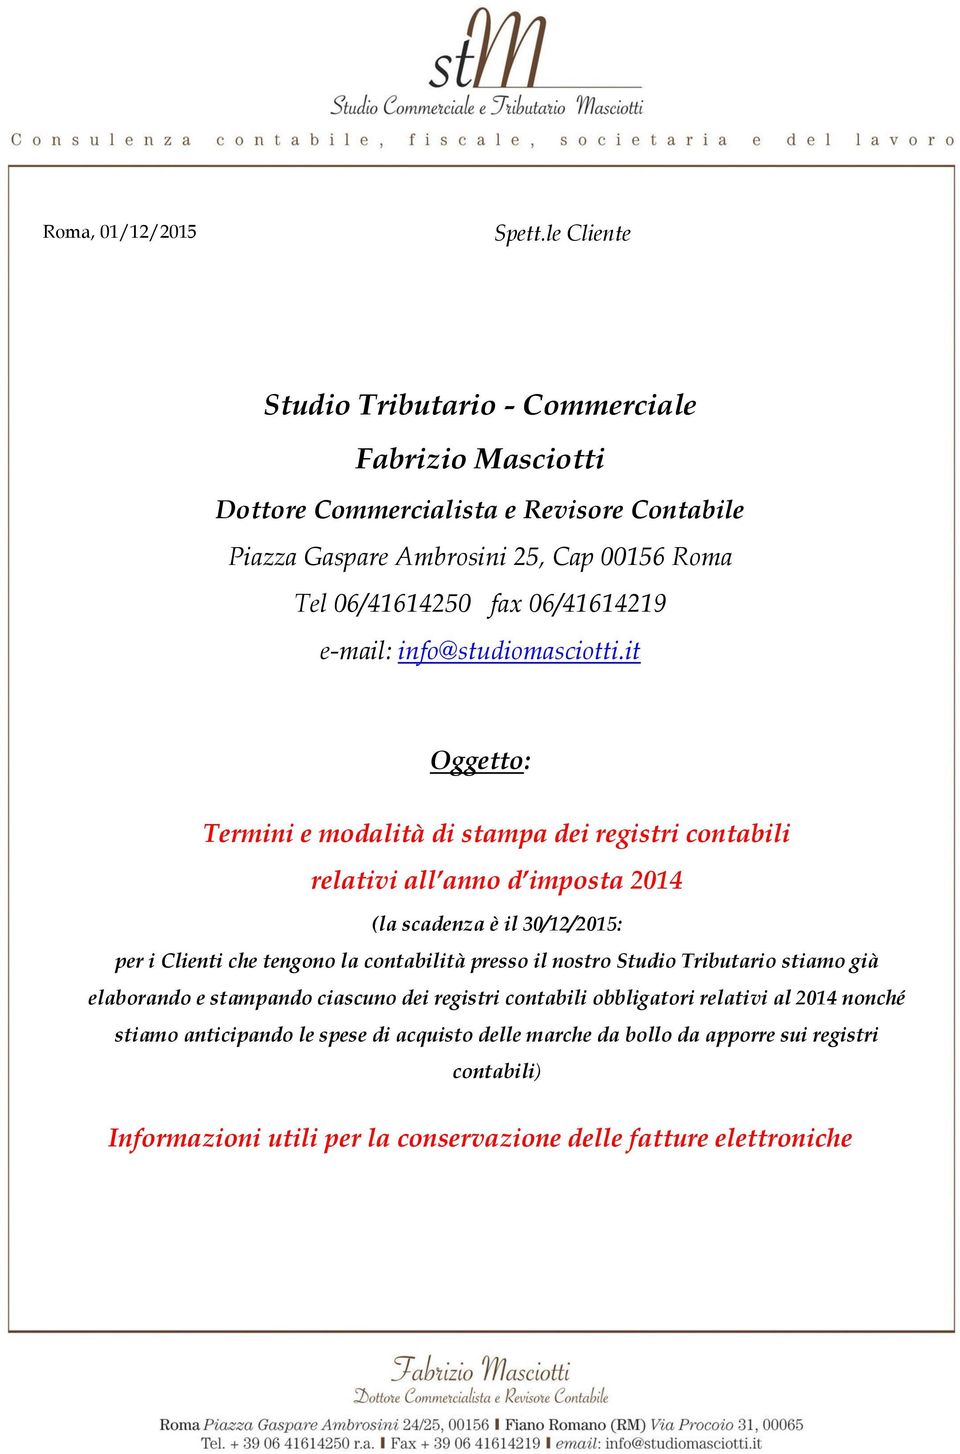 06/41614219 e-mail: info@studiomasciotti.